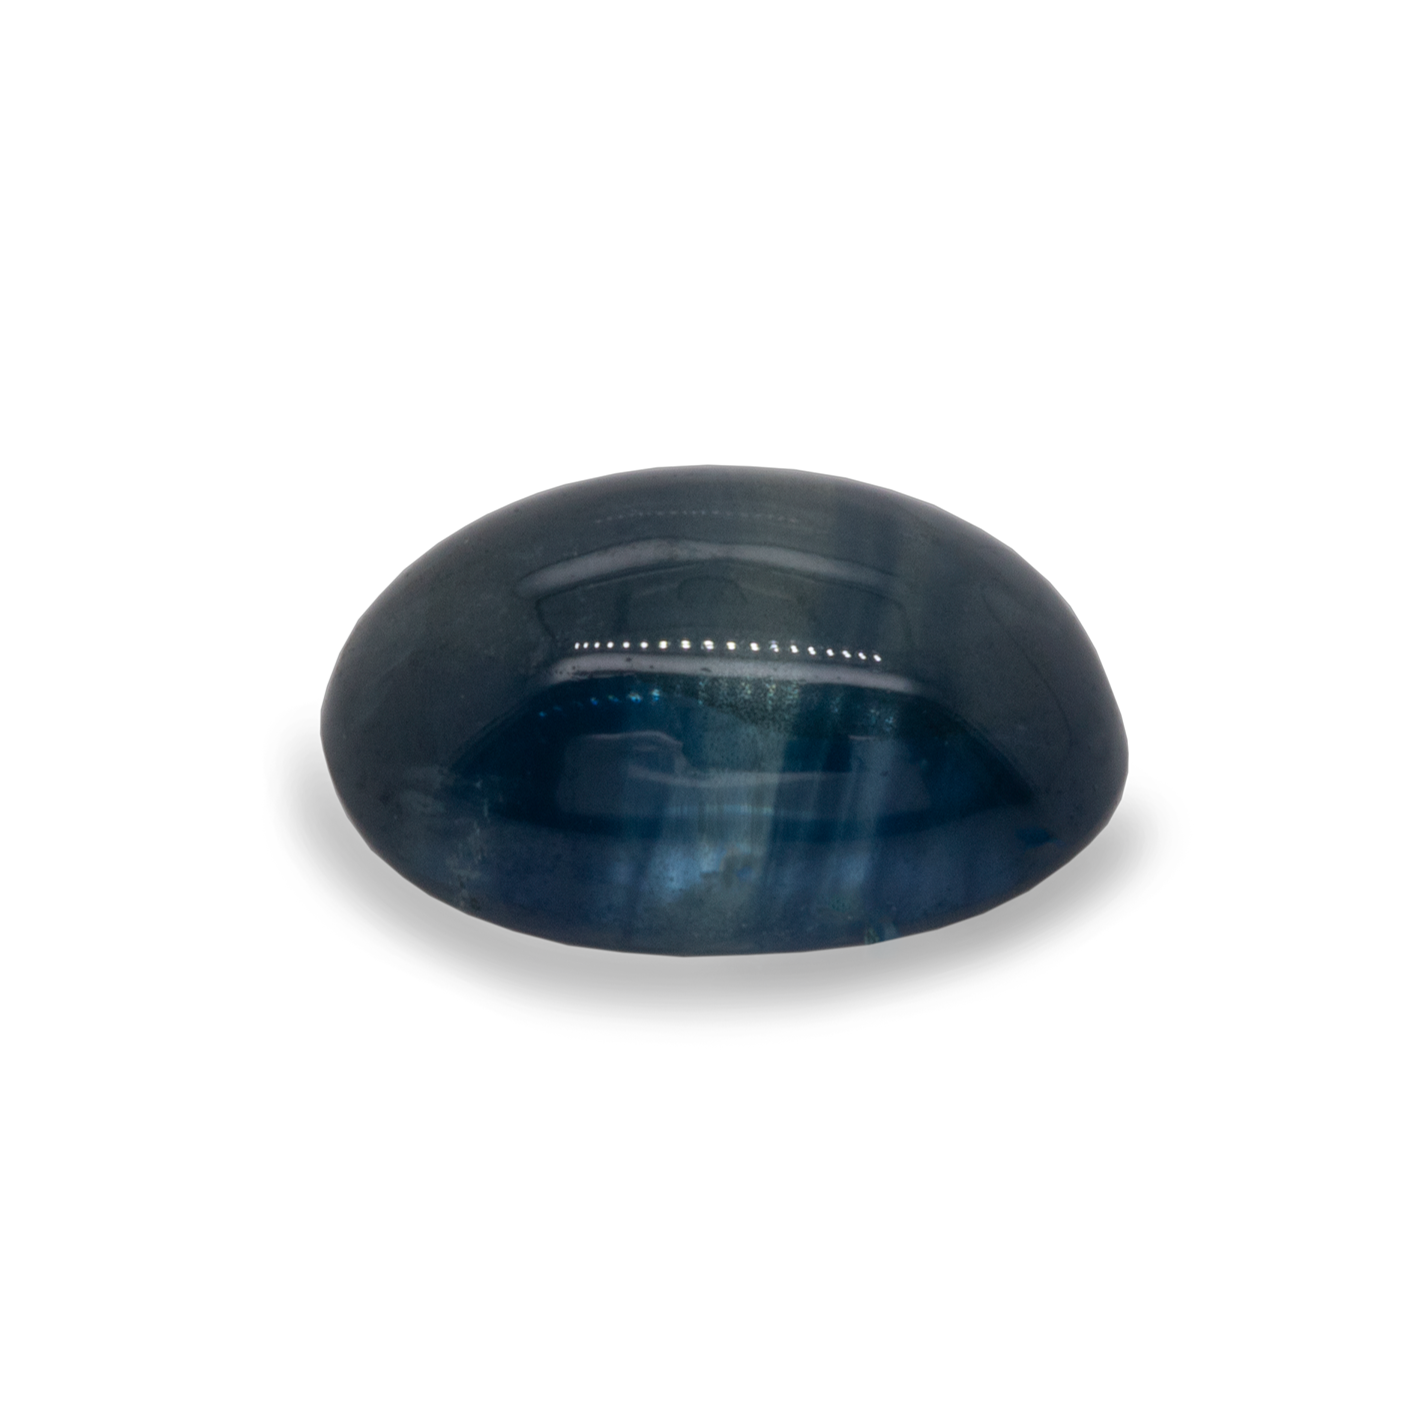 Sapphire - blue, oval, 6.25x4.25 - 5.90x3.80 mm, 0.62-0.96 cts, No. SR40001